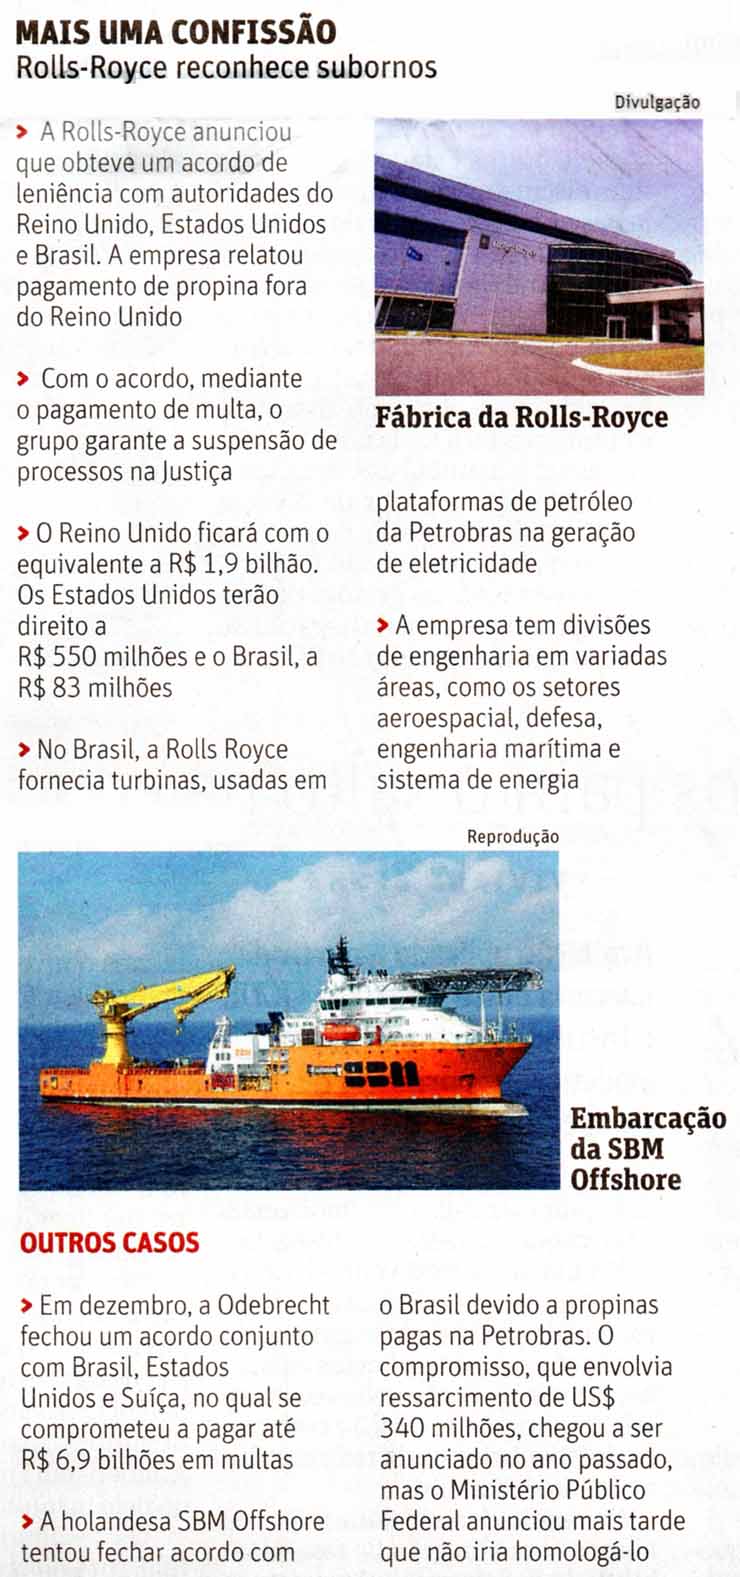 Rolls-Royce: Mais uma confisso / Folha de So Paulo / 17.01.2017